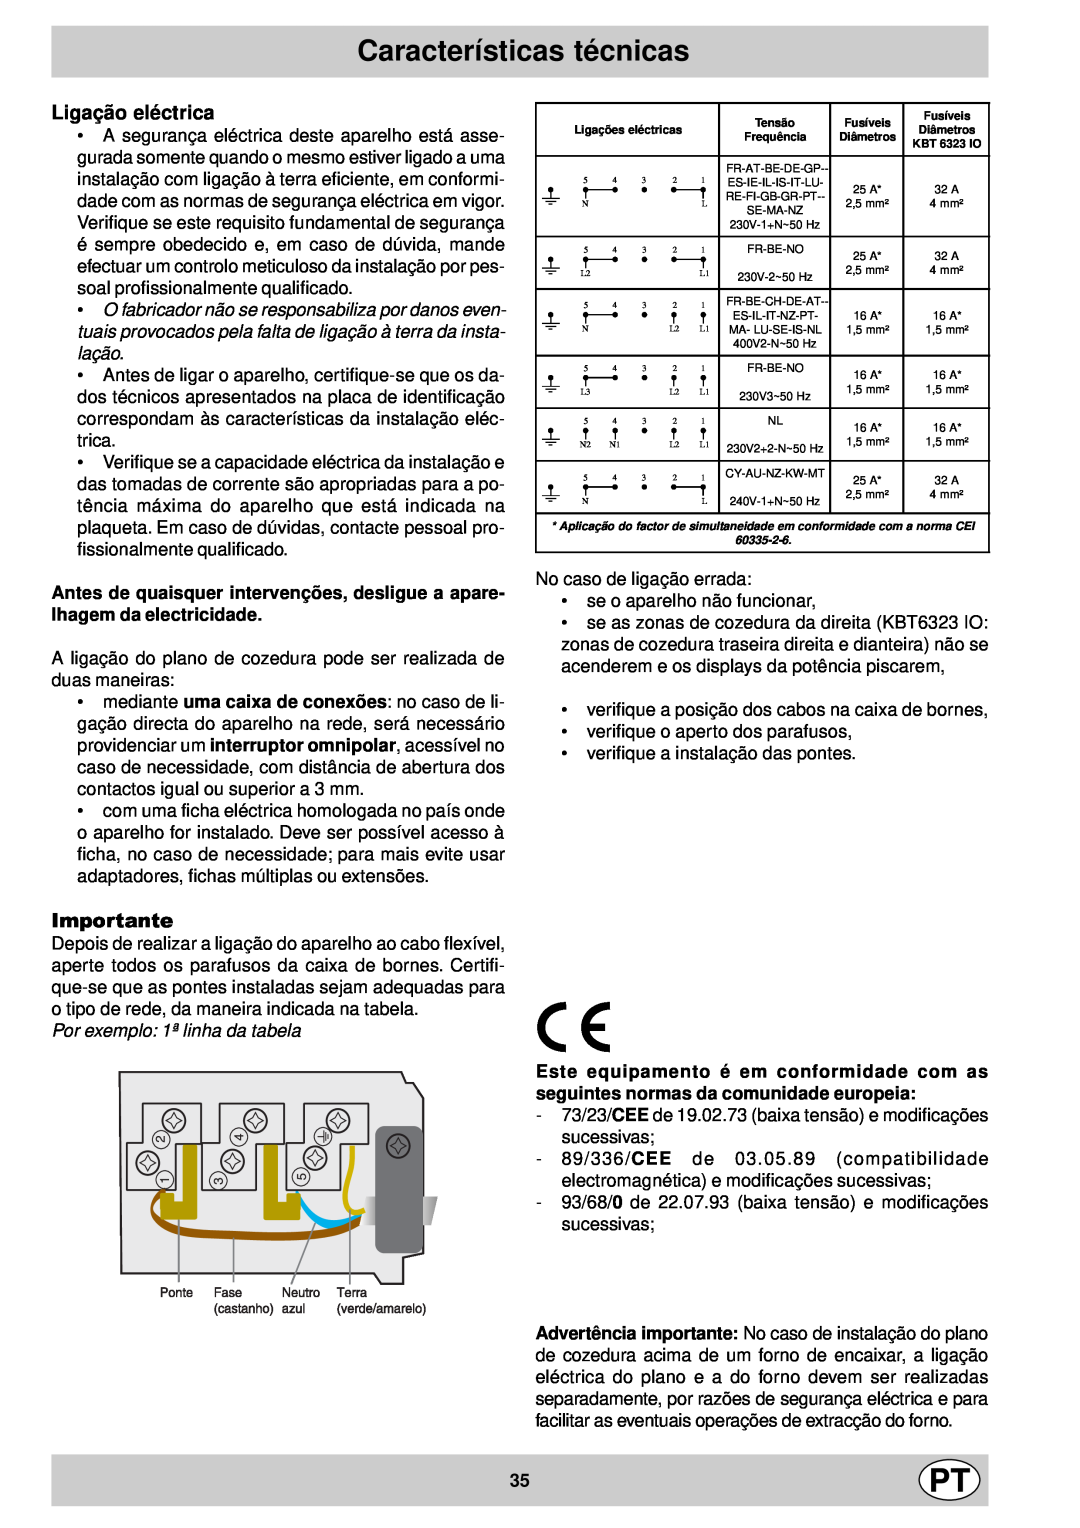 Indesit mk 64 r manual Características técnicas, Ligação eléctrica, Por exemplo 1ª linha da tabela, Importante 